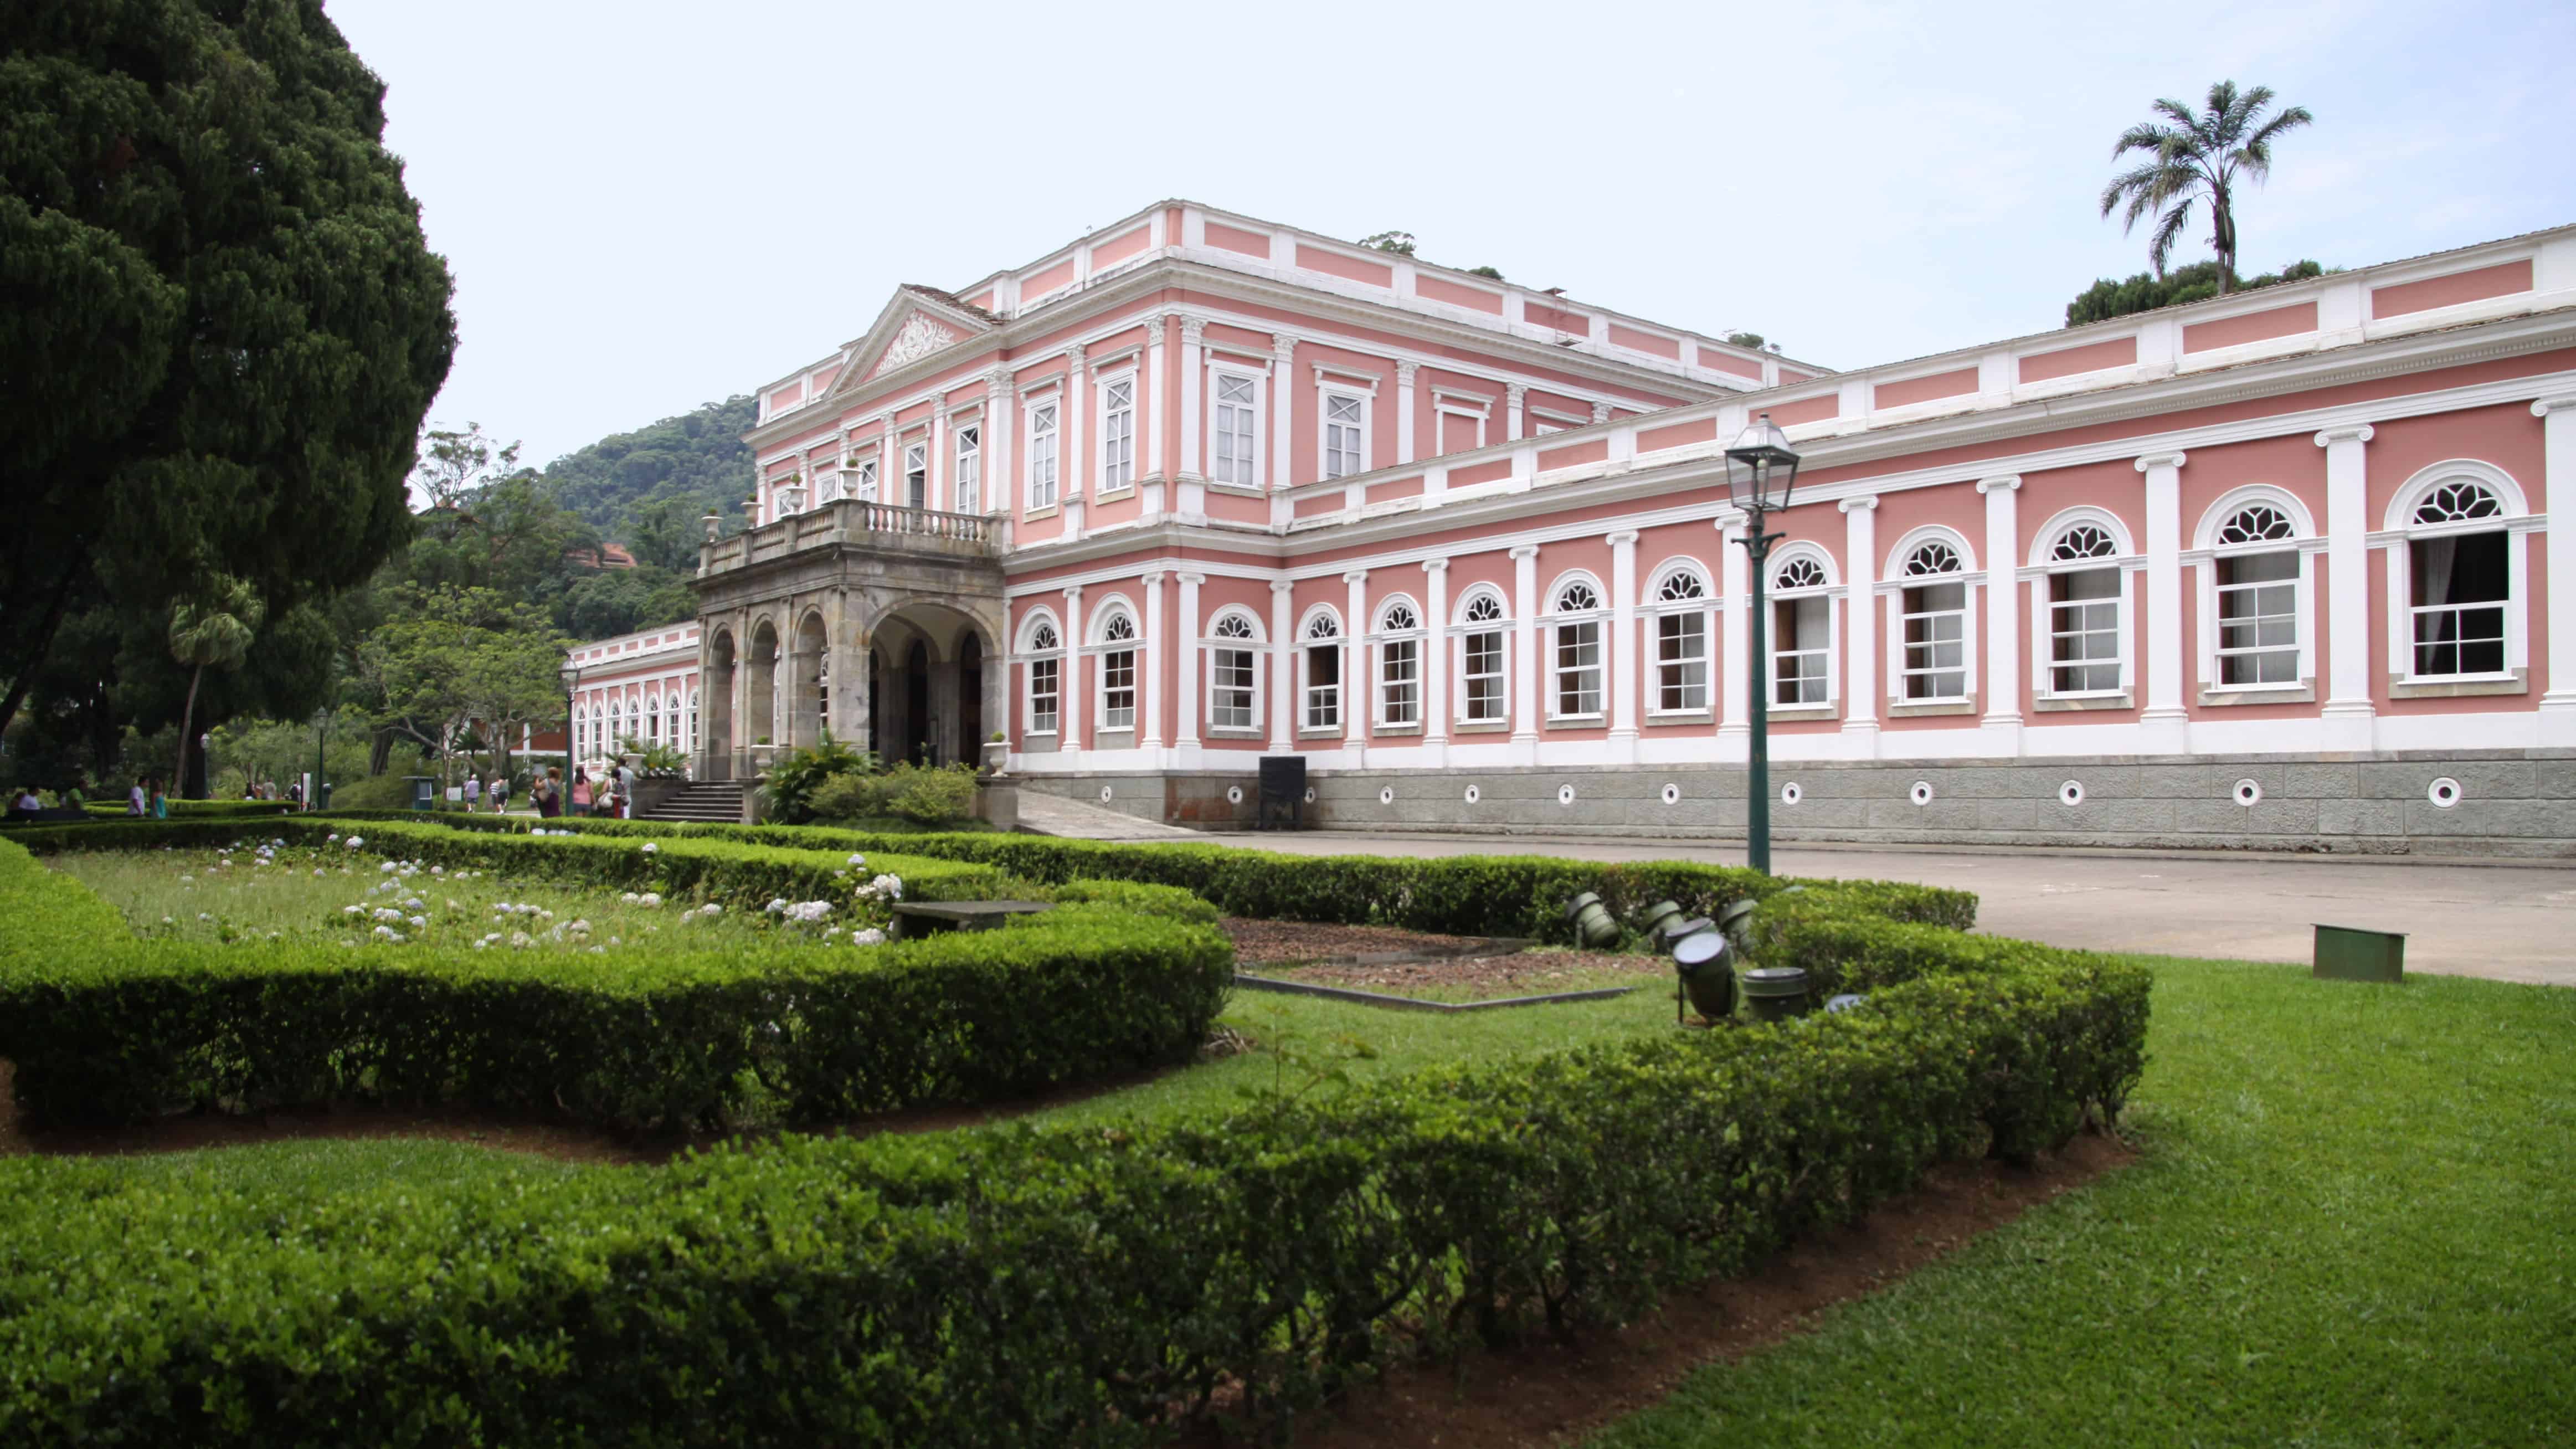 Museu Imperial em Petrópolis